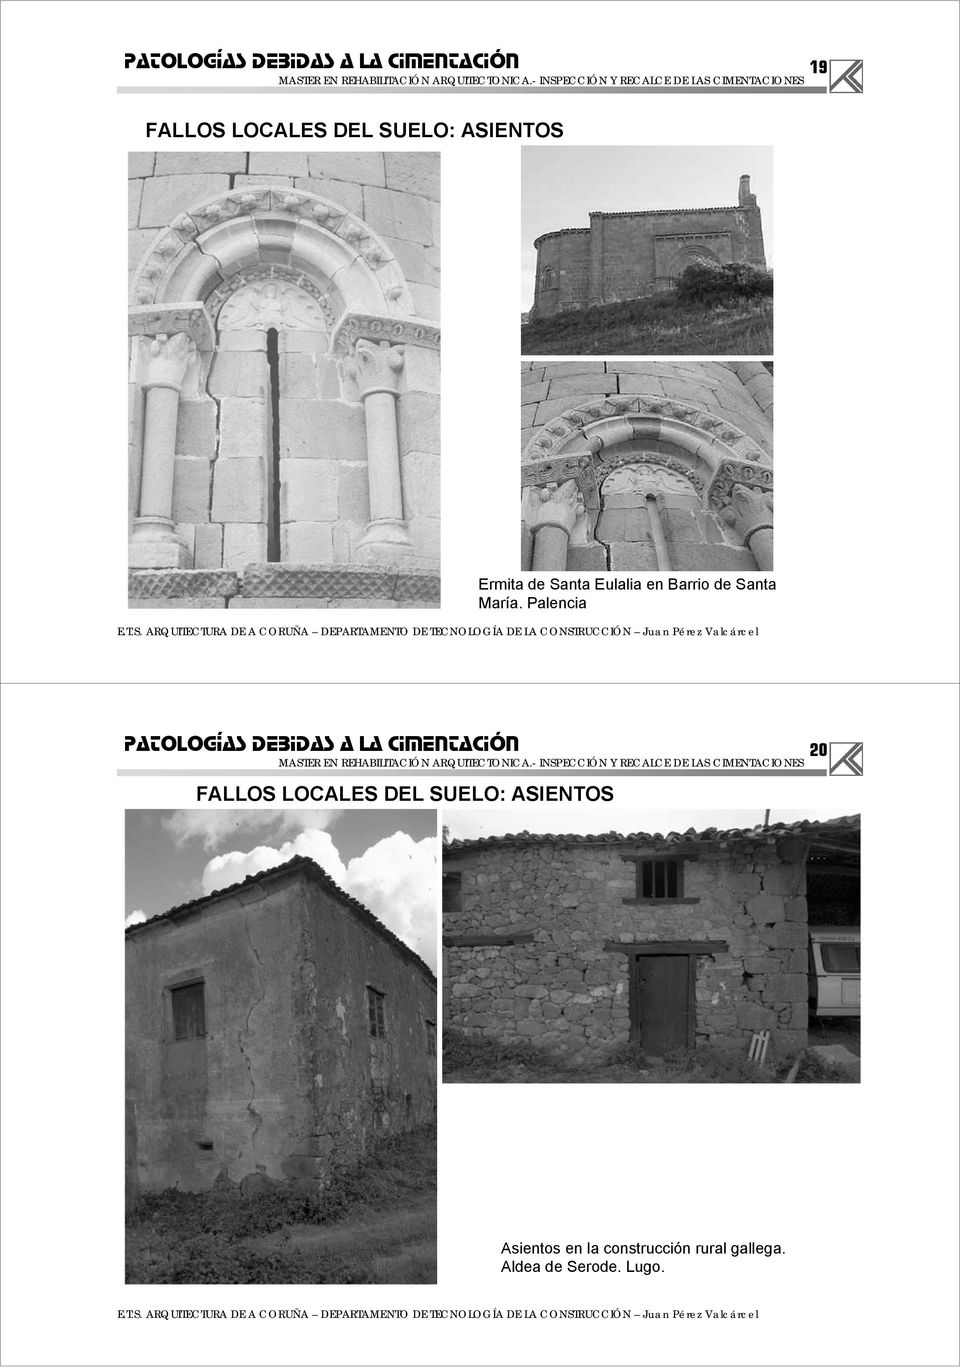 Palencia FALLOS LOCALES DEL SUELO: ASIENTOS 20